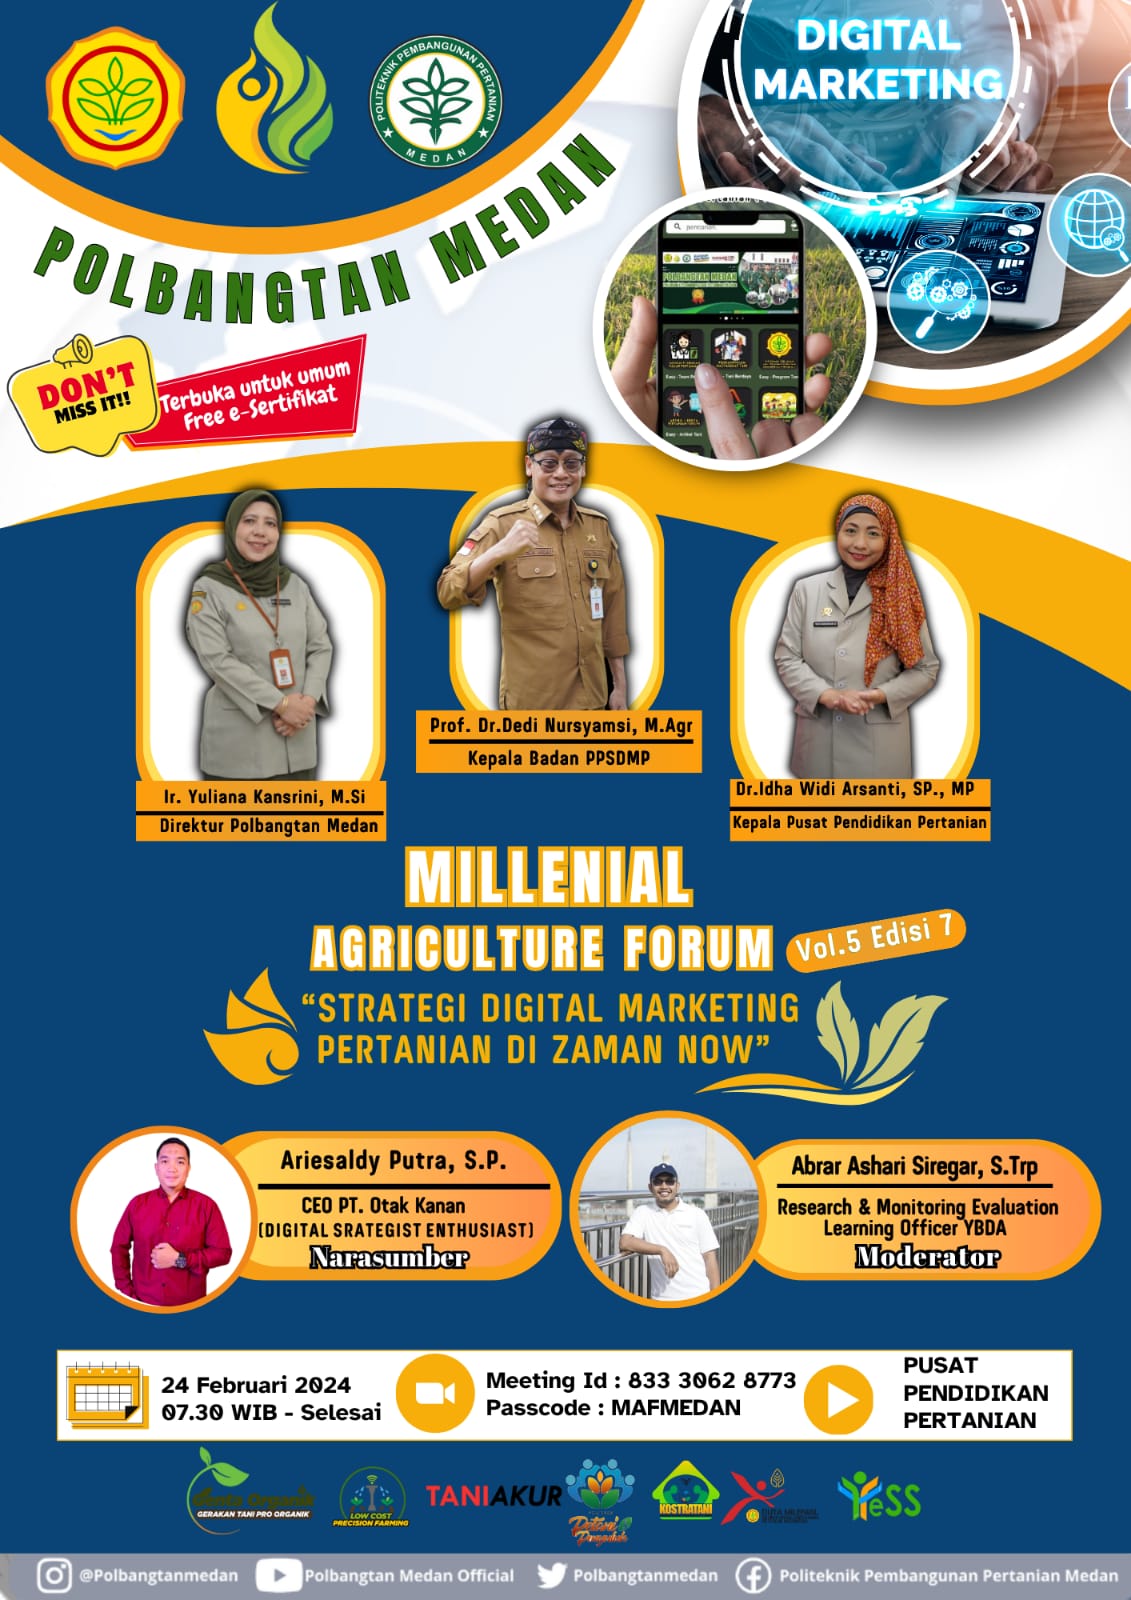 Millenial Agriculture Forum (MAF) Volume 5 Edisi 7